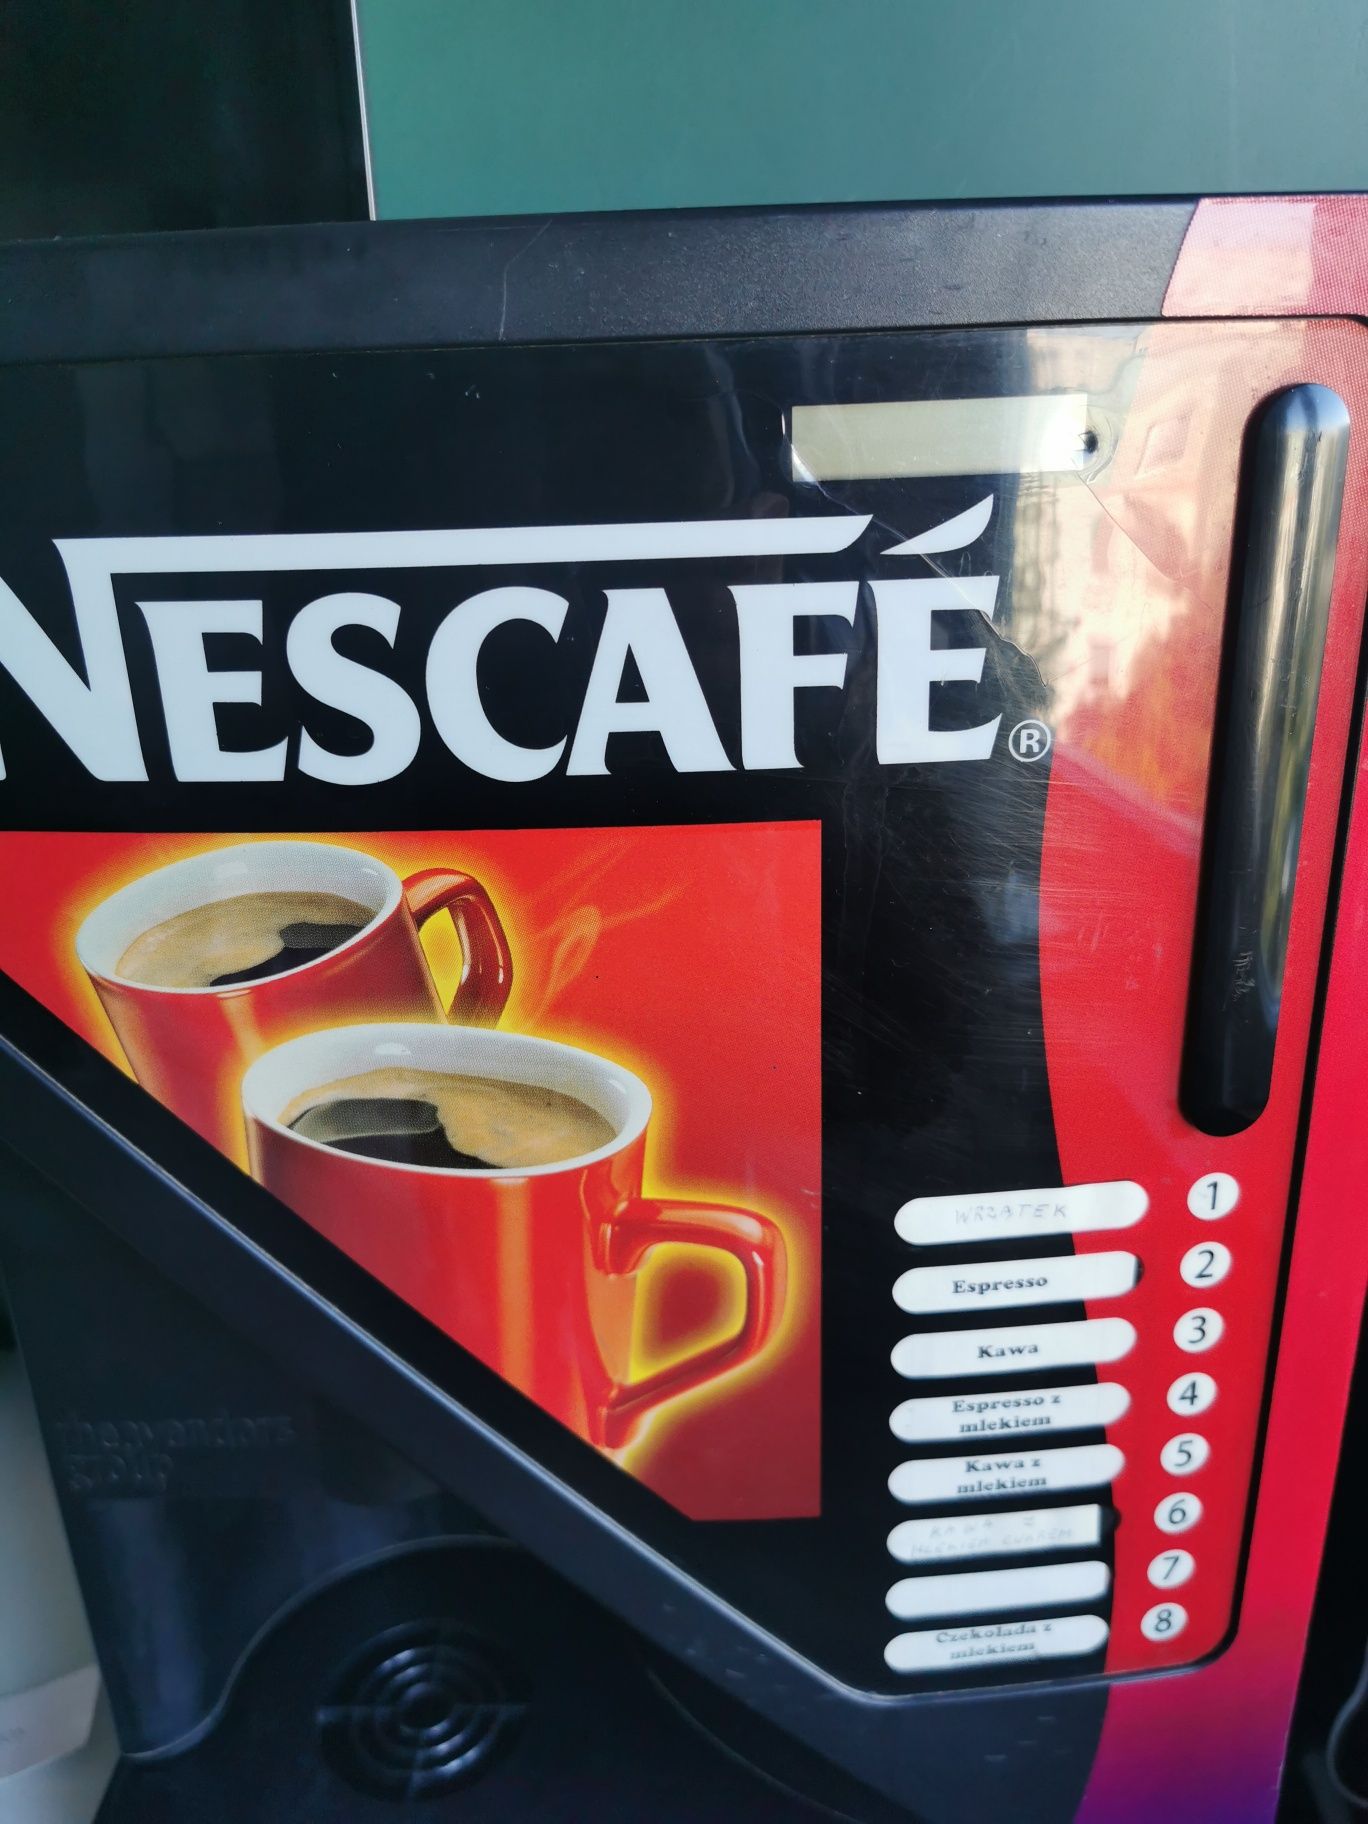 Automat vendingowy Nescafe